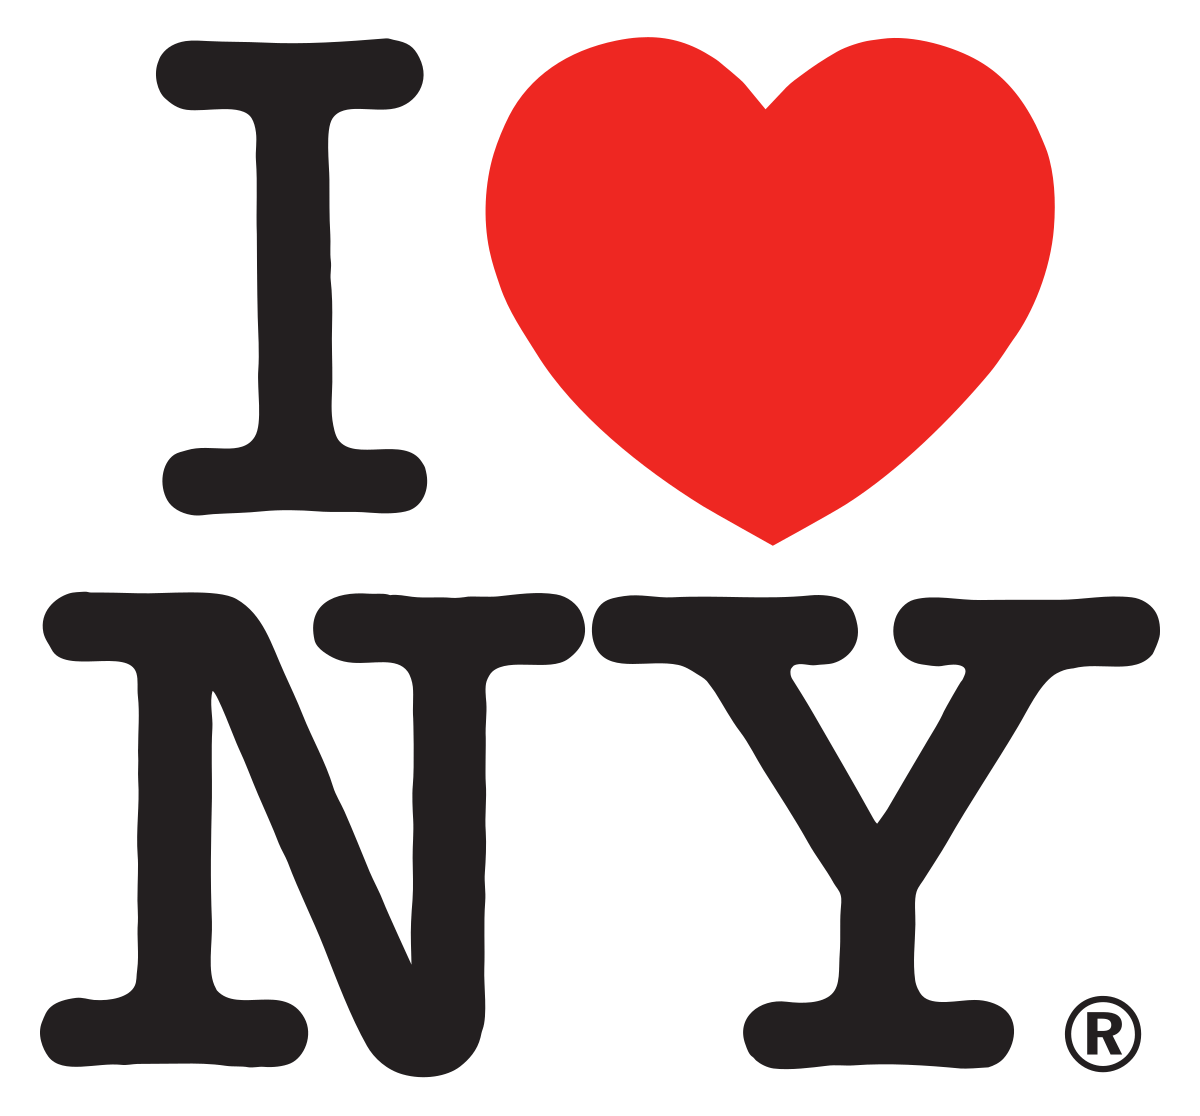 New York Logo - I Love New York